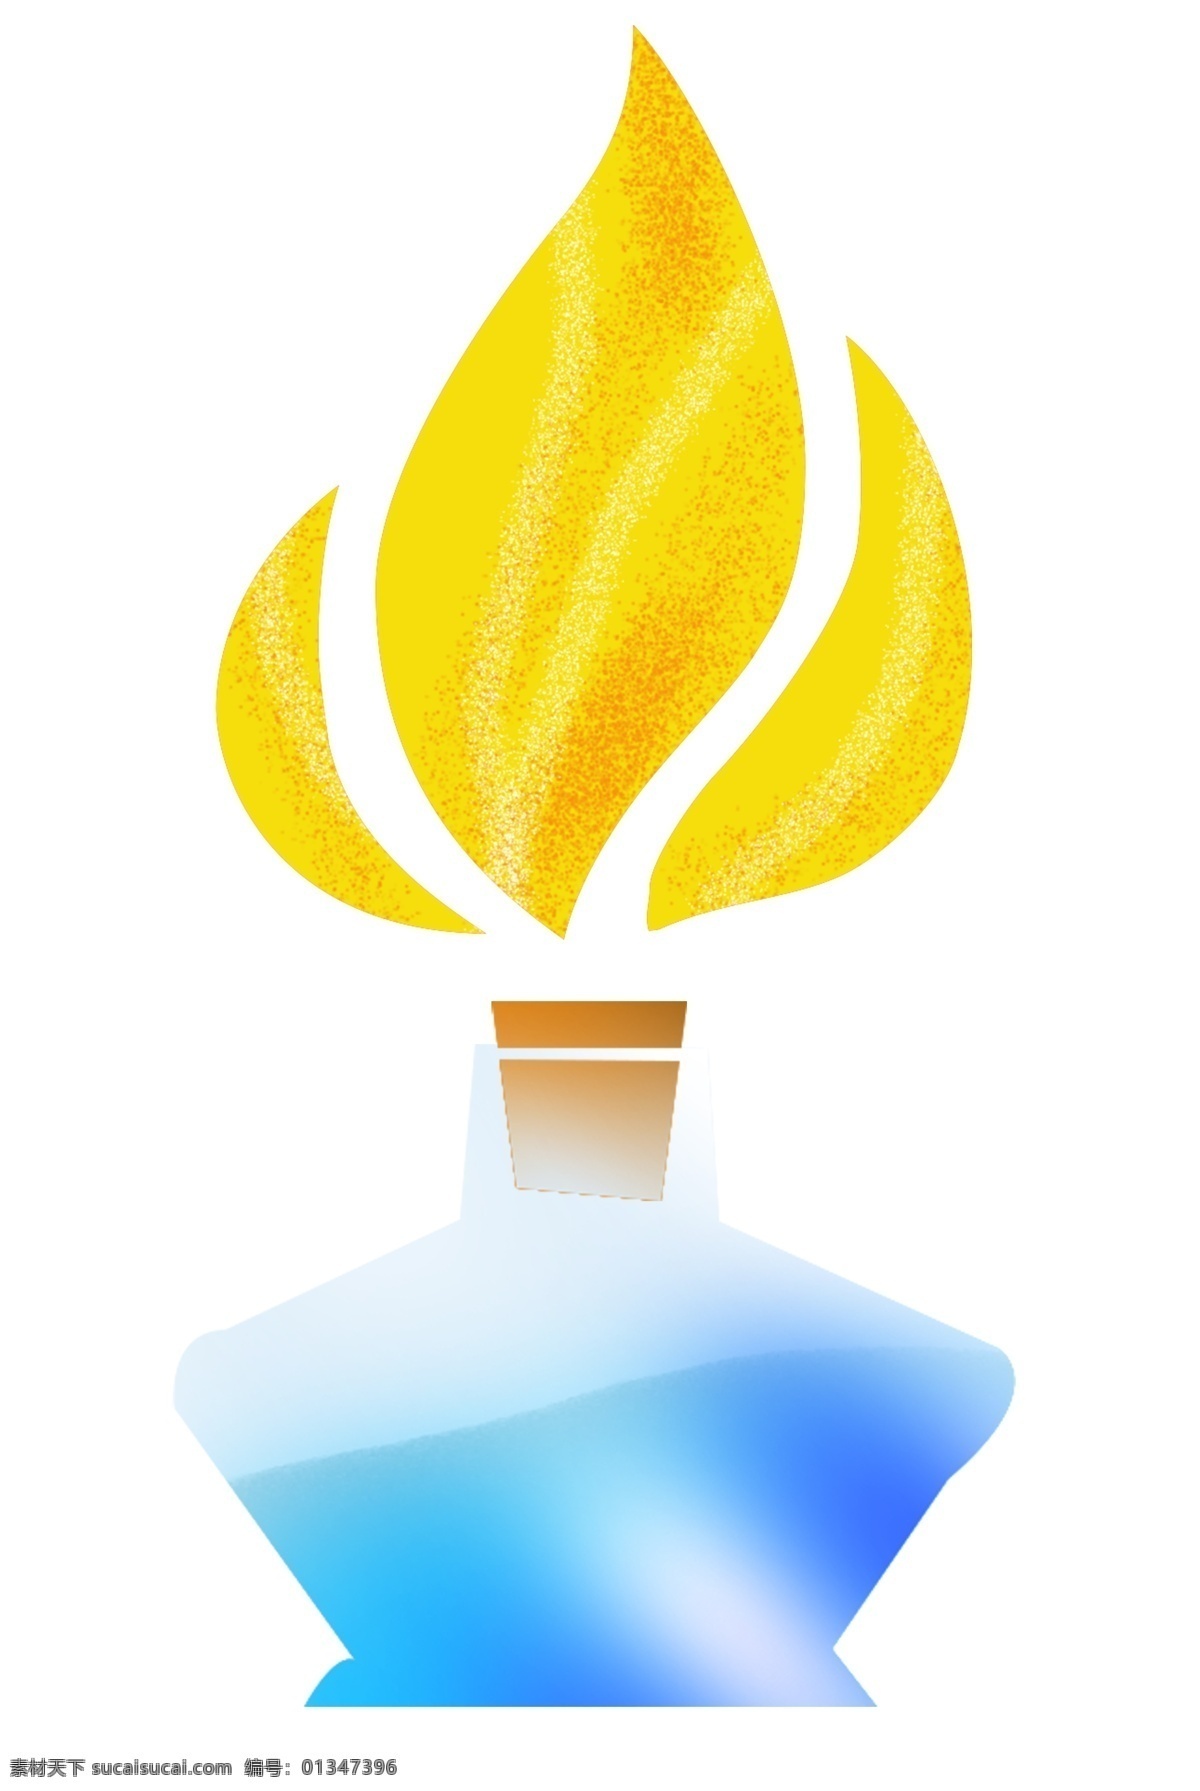 化学 实验室 酒精灯 插画 化学实验用品 卡通酒精灯 创意装饰插画 手账装饰插画 橘黄色的火焰 加热装置